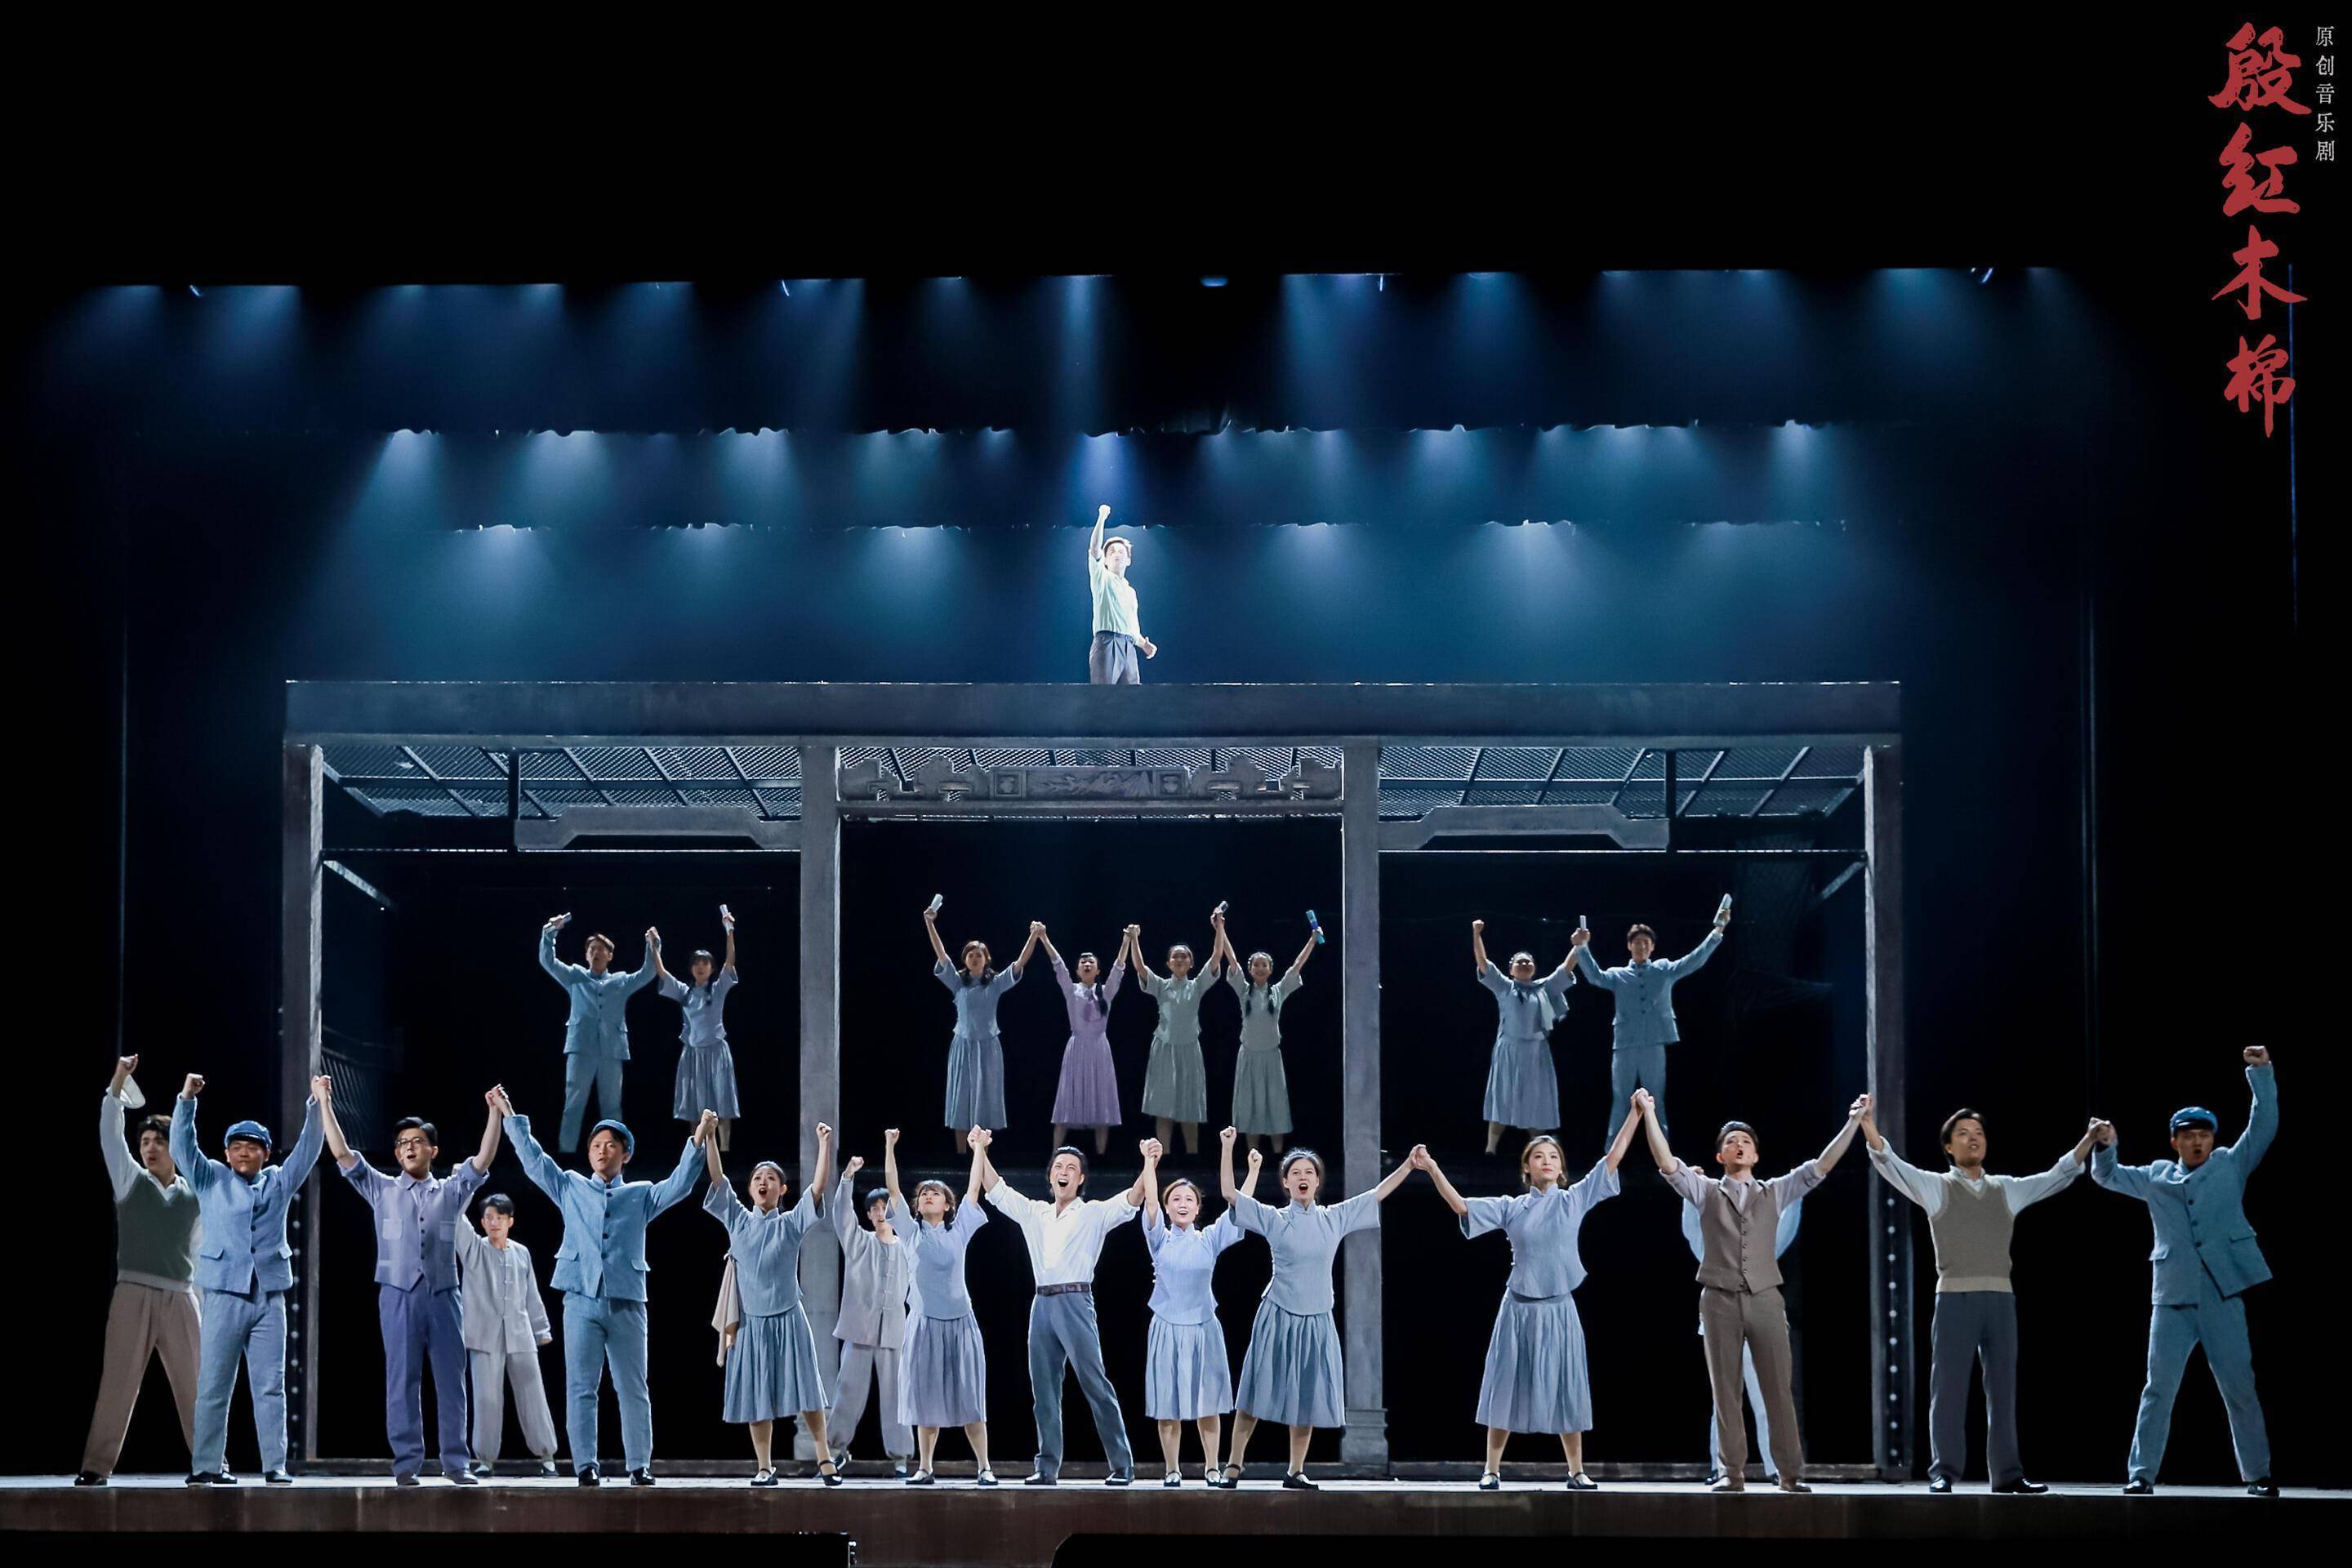 星海音乐学院原创音乐剧《殷红木棉》在广州大剧院隆重上演